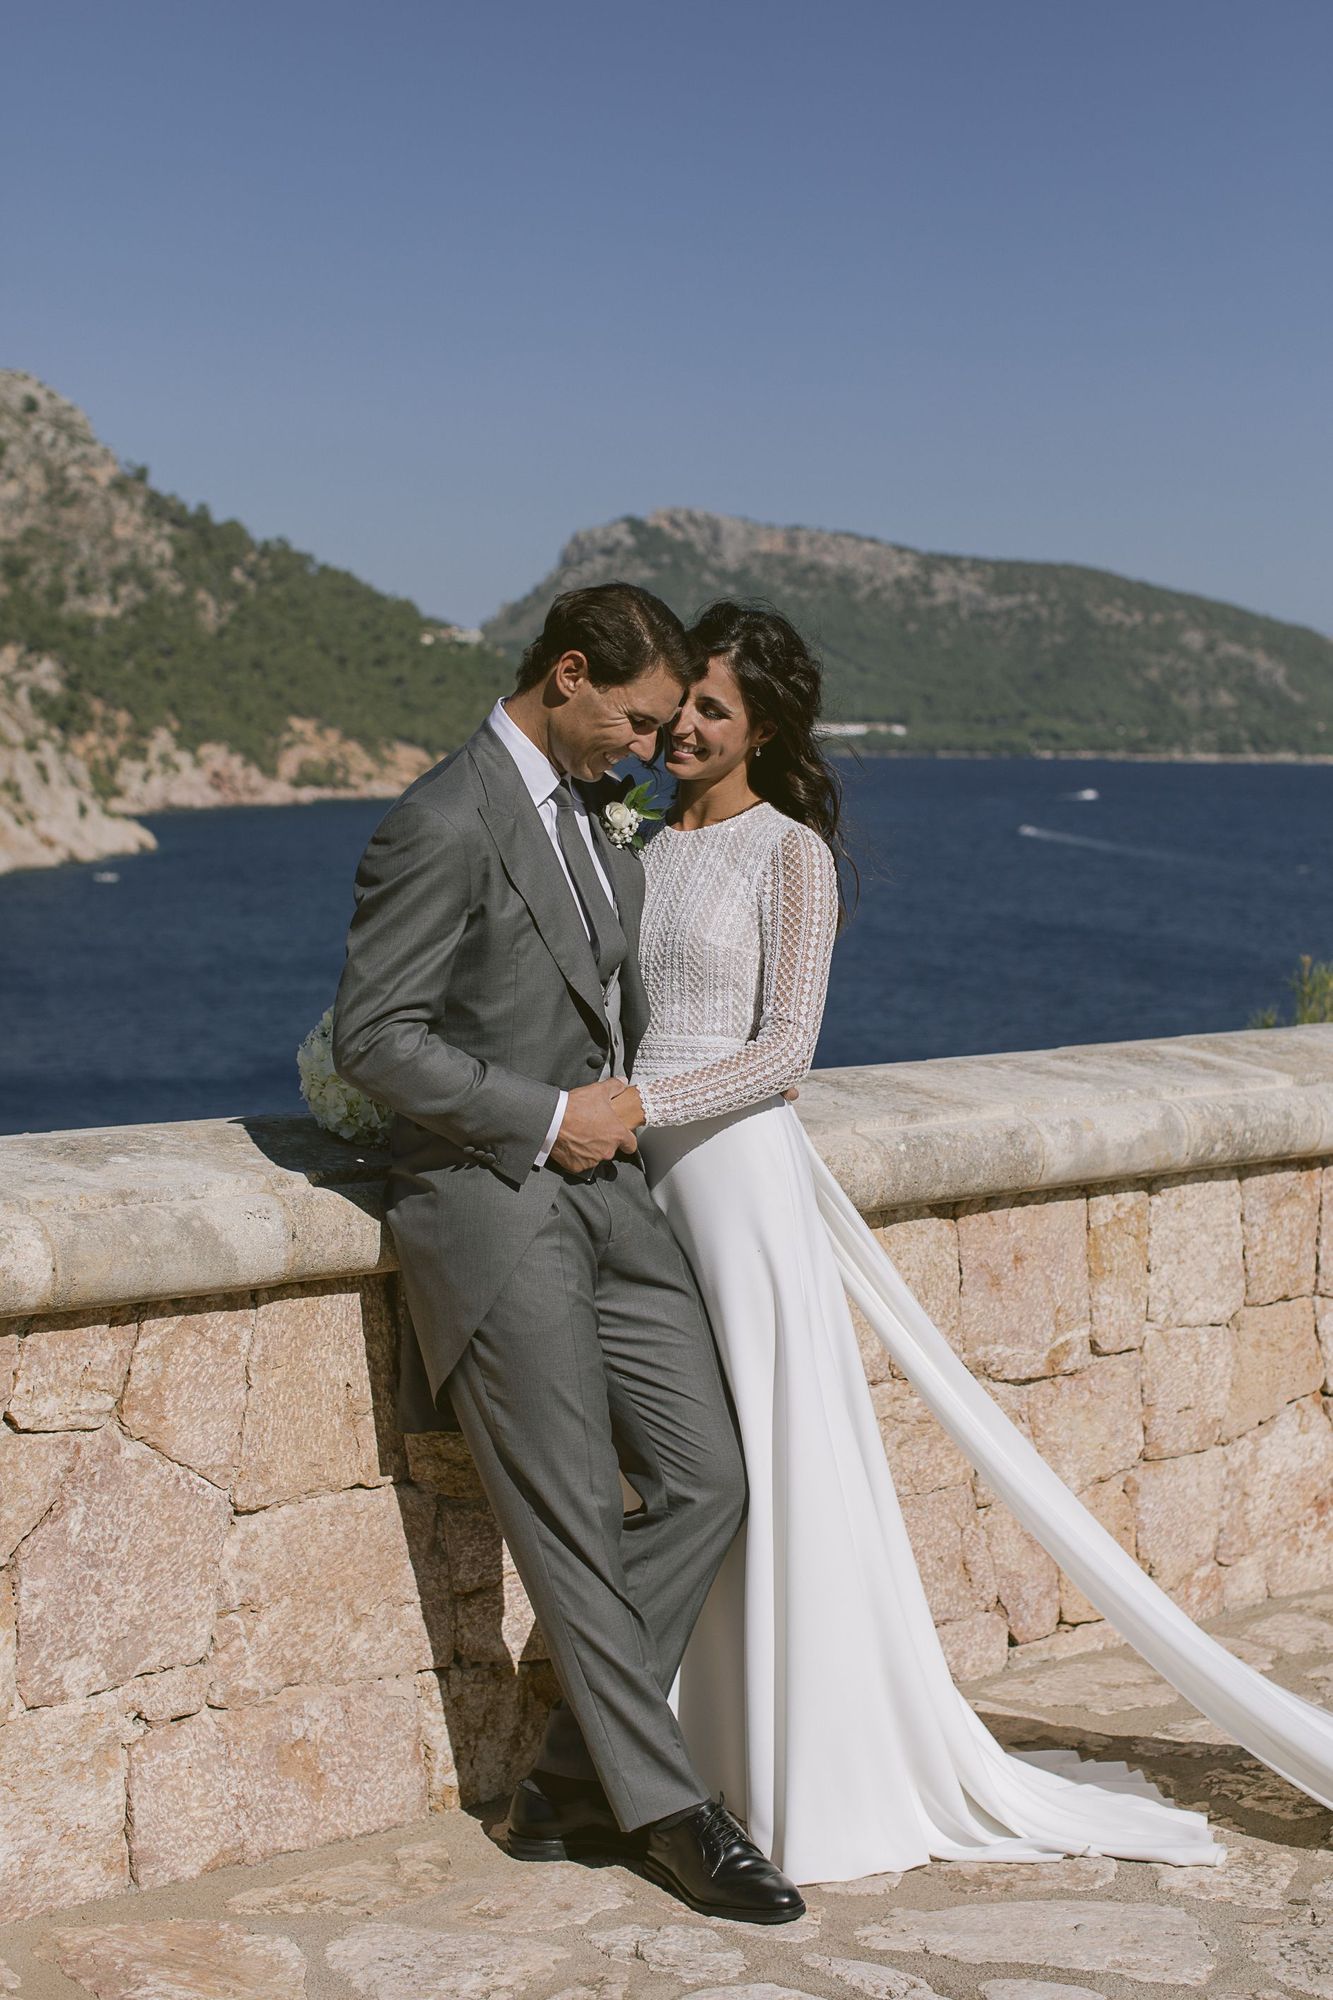 Traumpaar Rafael Nadal und Mery Perelló - eine Liebe auf Mallorca in Bildern